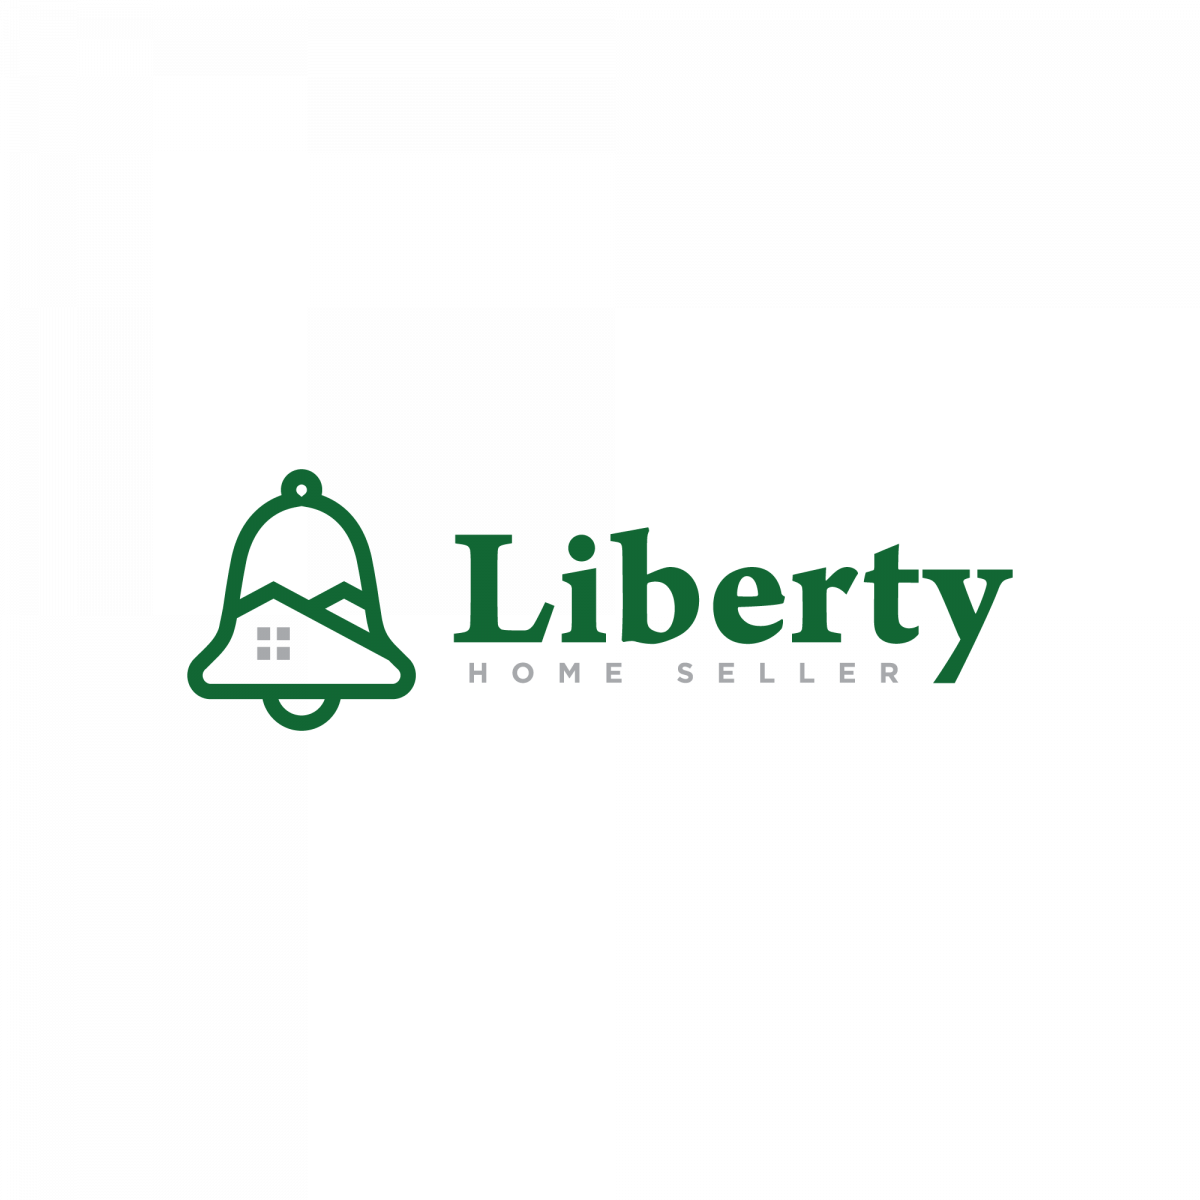 Liberty Home Seller logo